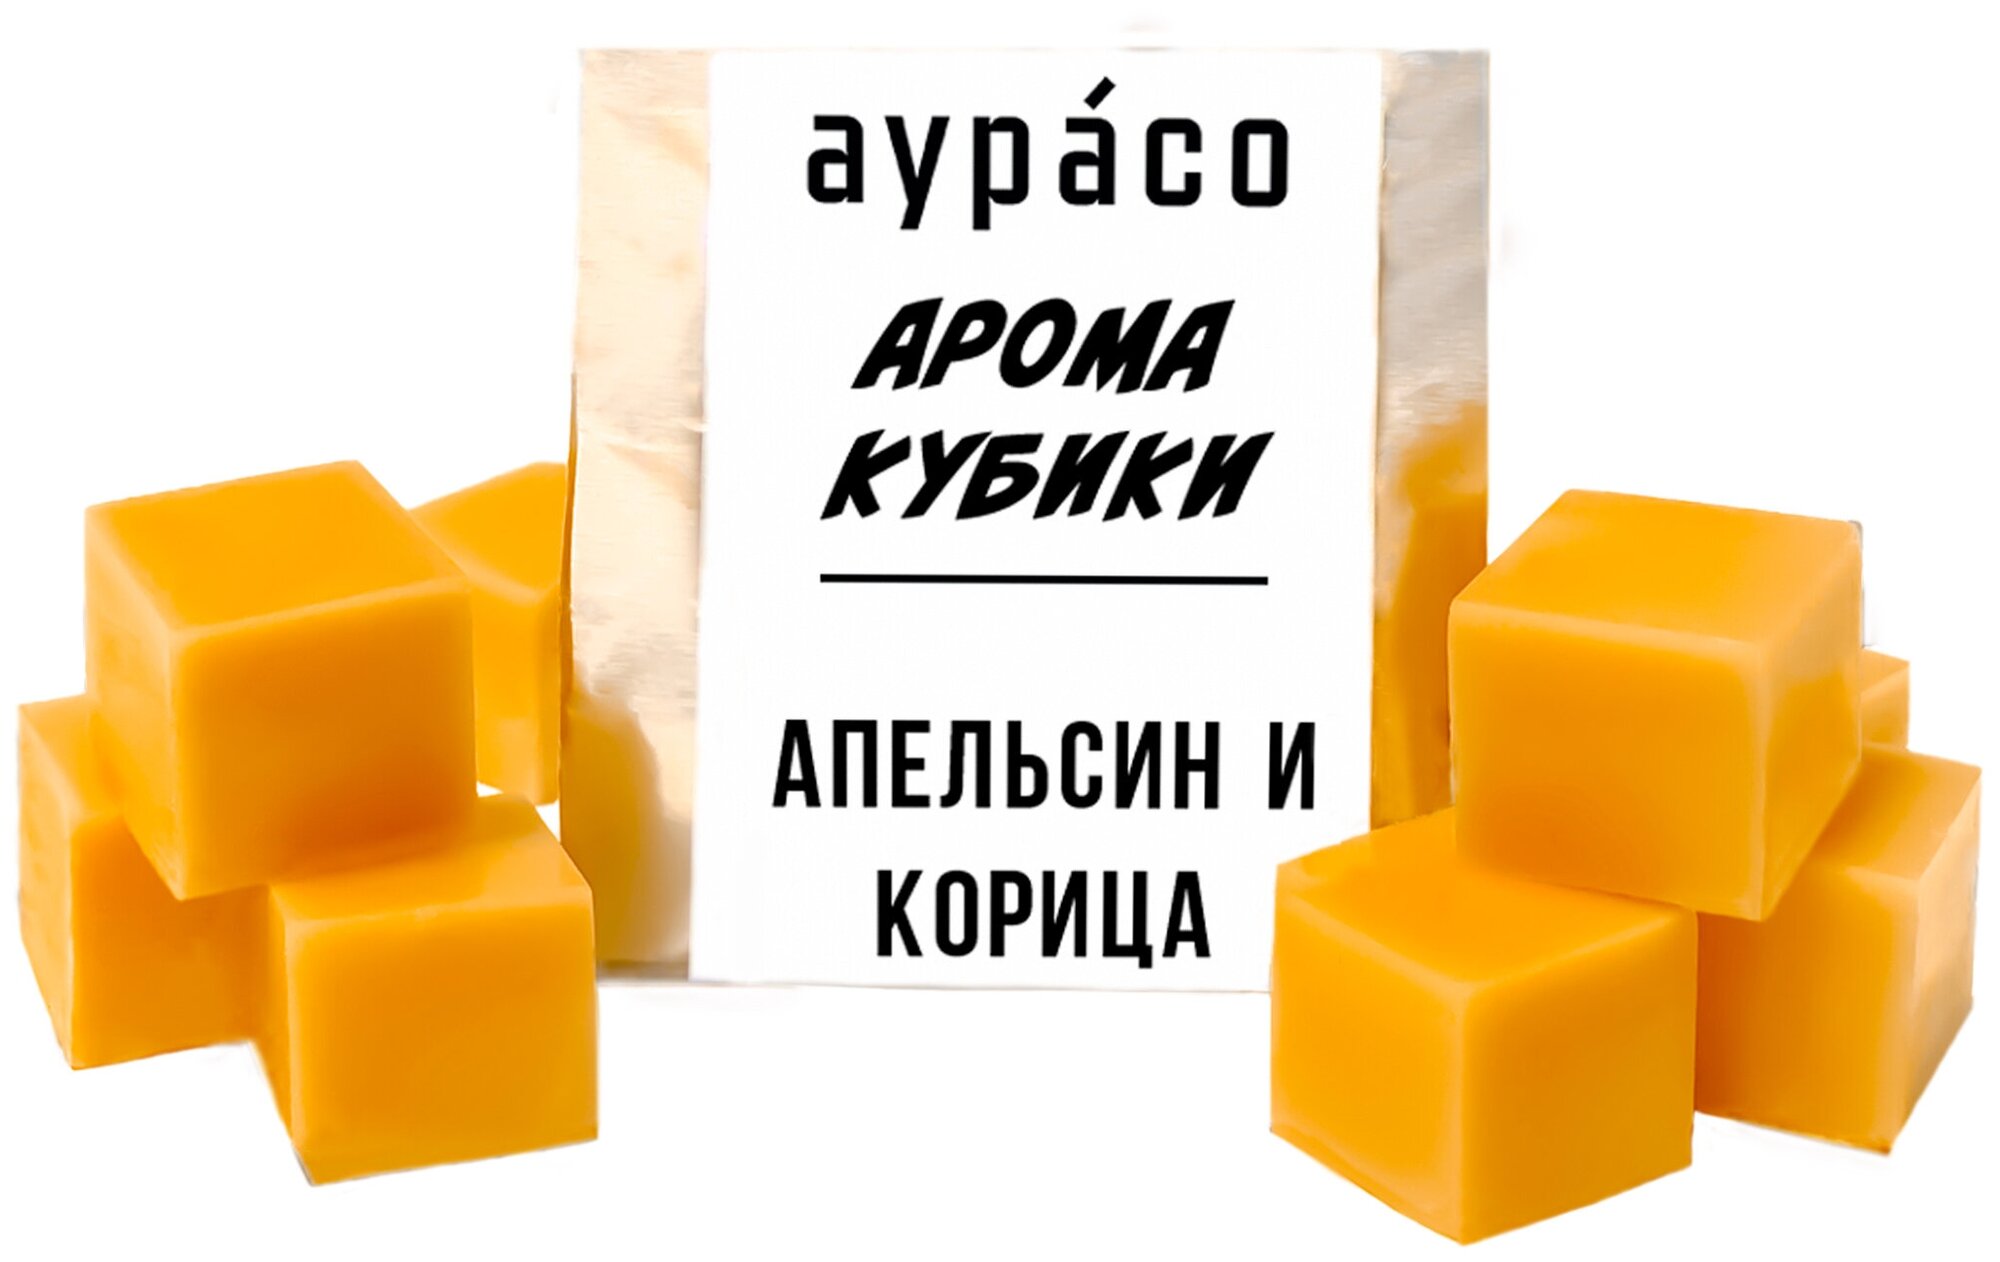 Апельсин и корица - ароматические кубики Аурасо ароматический воск для аромалампы 9 штук